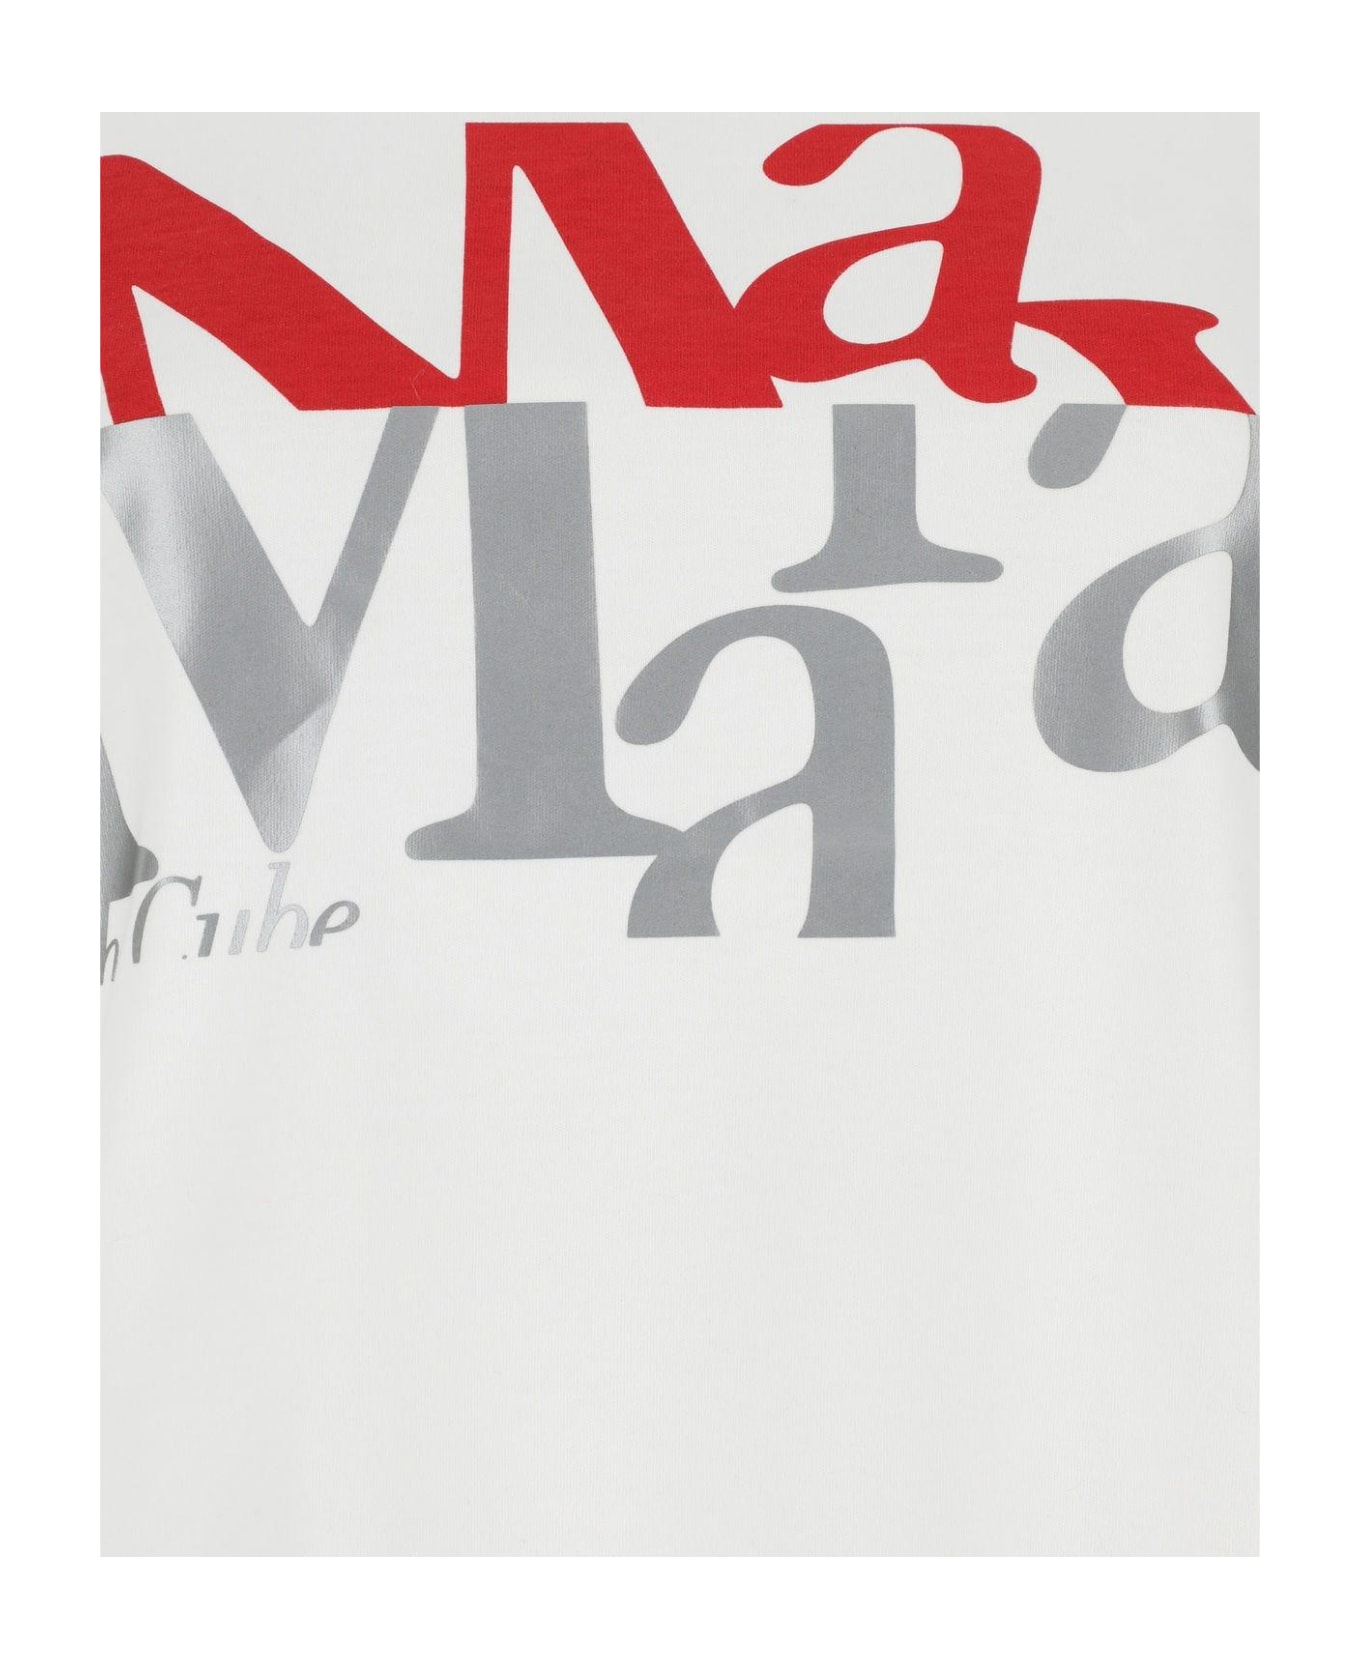 'S Max Mara White Cotton Gilbert T-shirt - Bianco Ottico Tシャツ